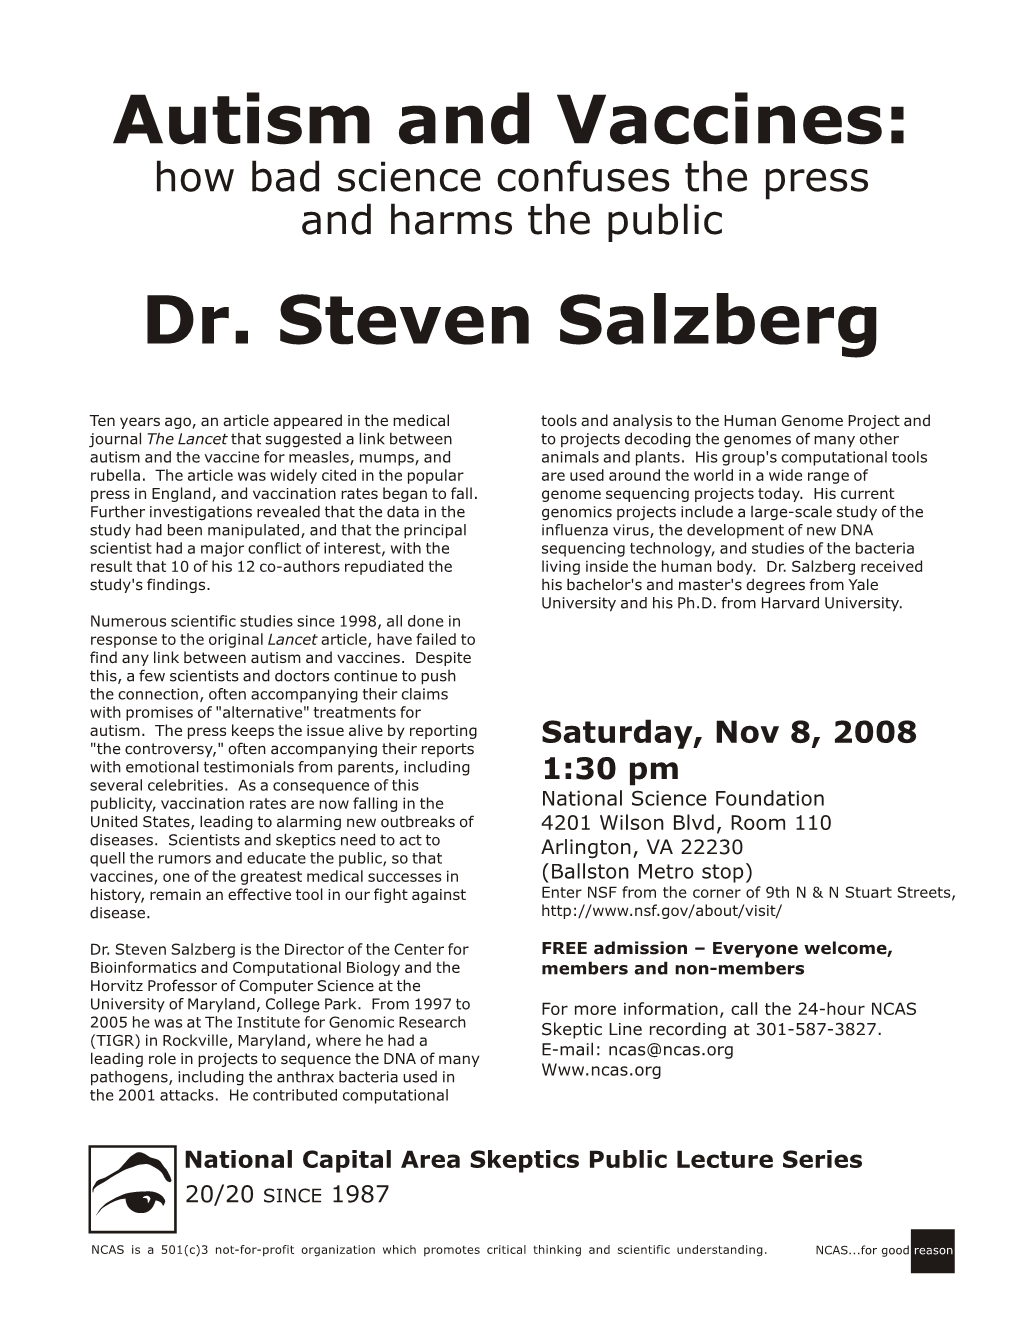 Dr. Steven Salzberg